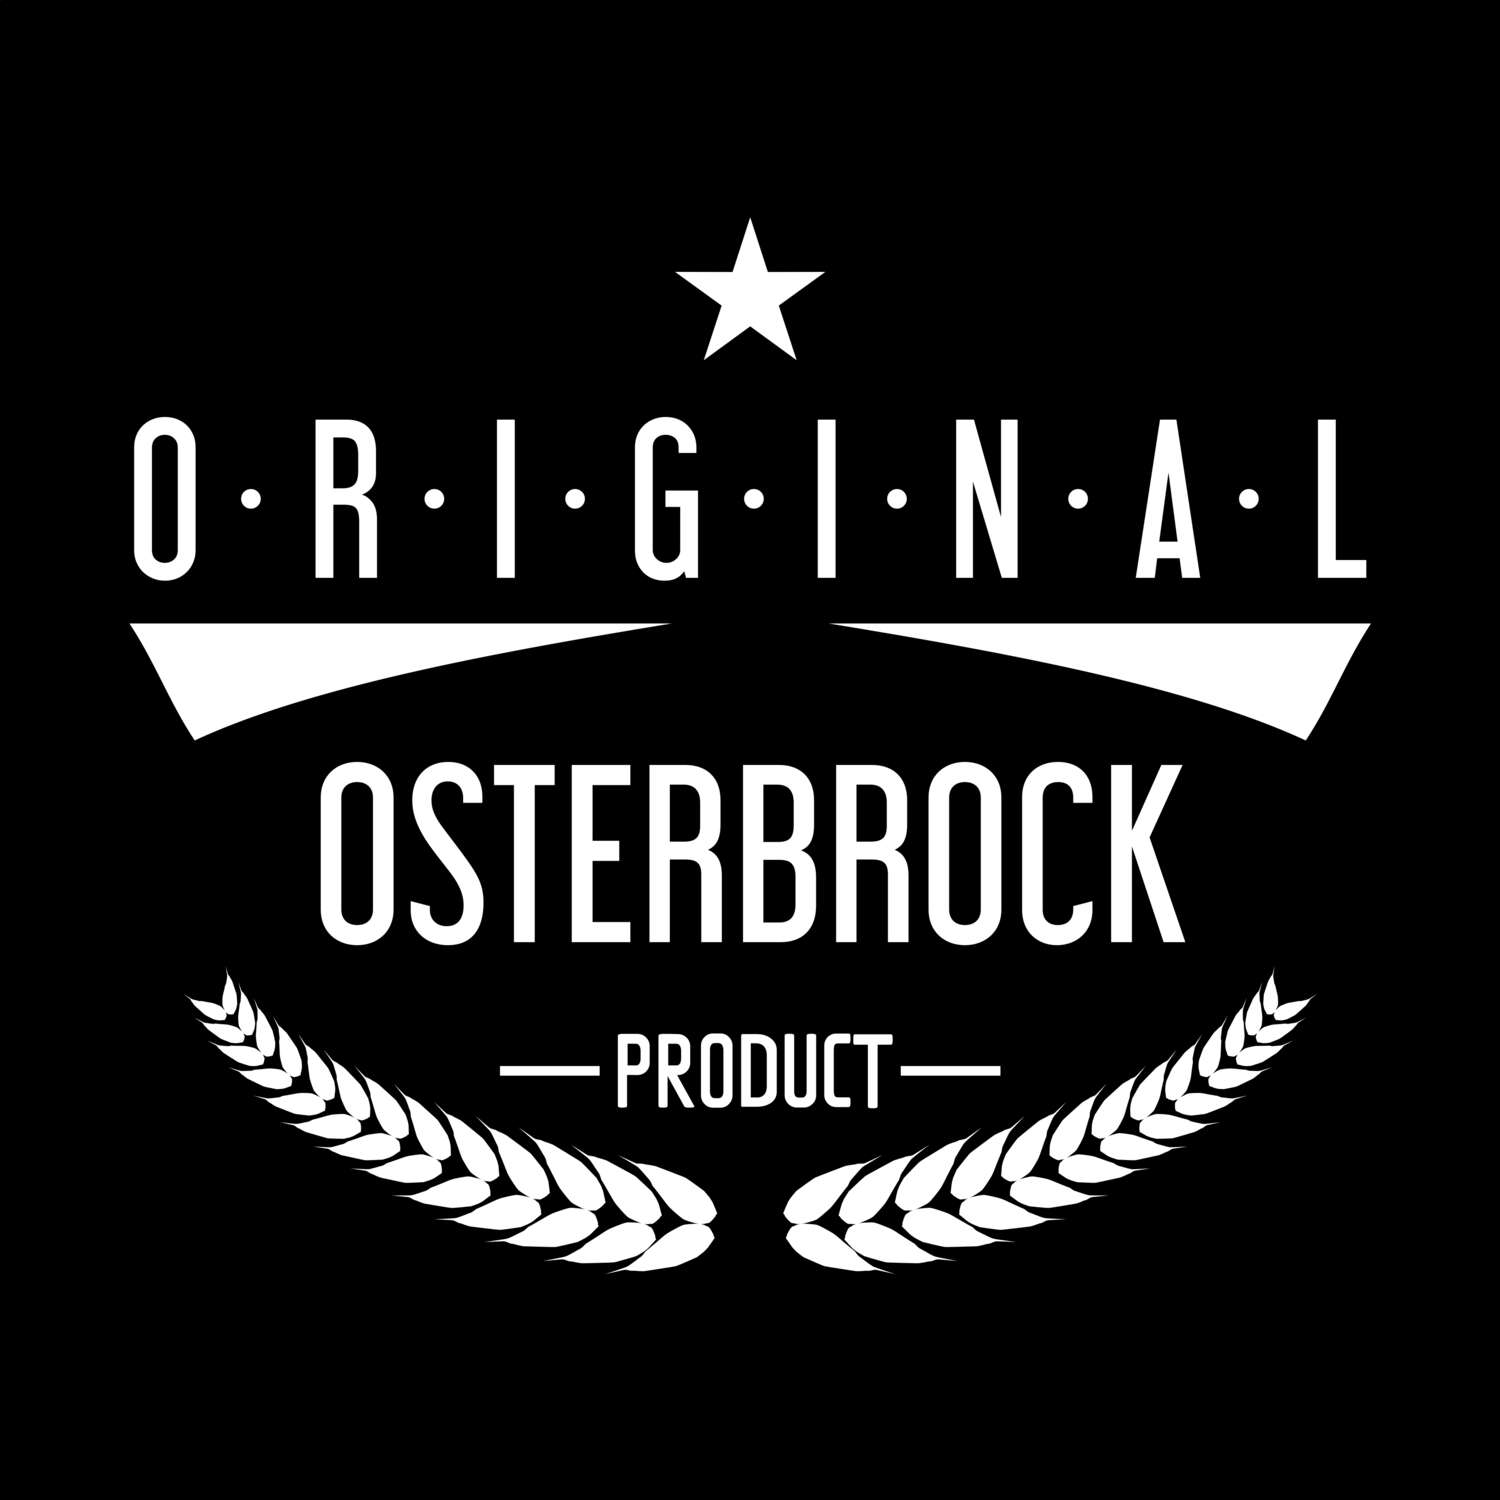 Osterbrock T-Shirt »Original Product«